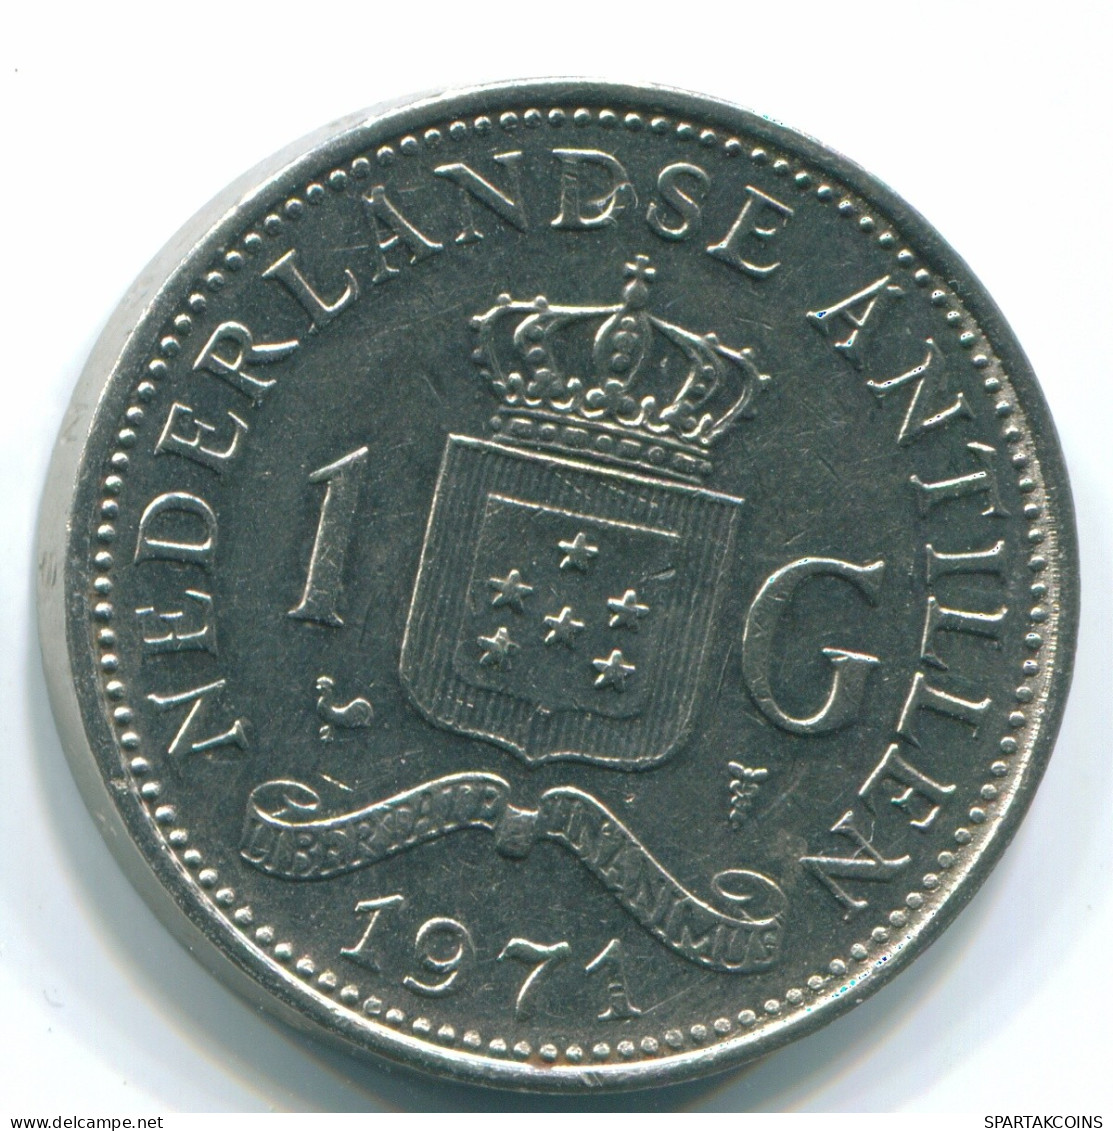 1 GULDEN 1971 NIEDERLÄNDISCHE ANTILLEN Nickel Koloniale Münze #S11969.D.A - Netherlands Antilles